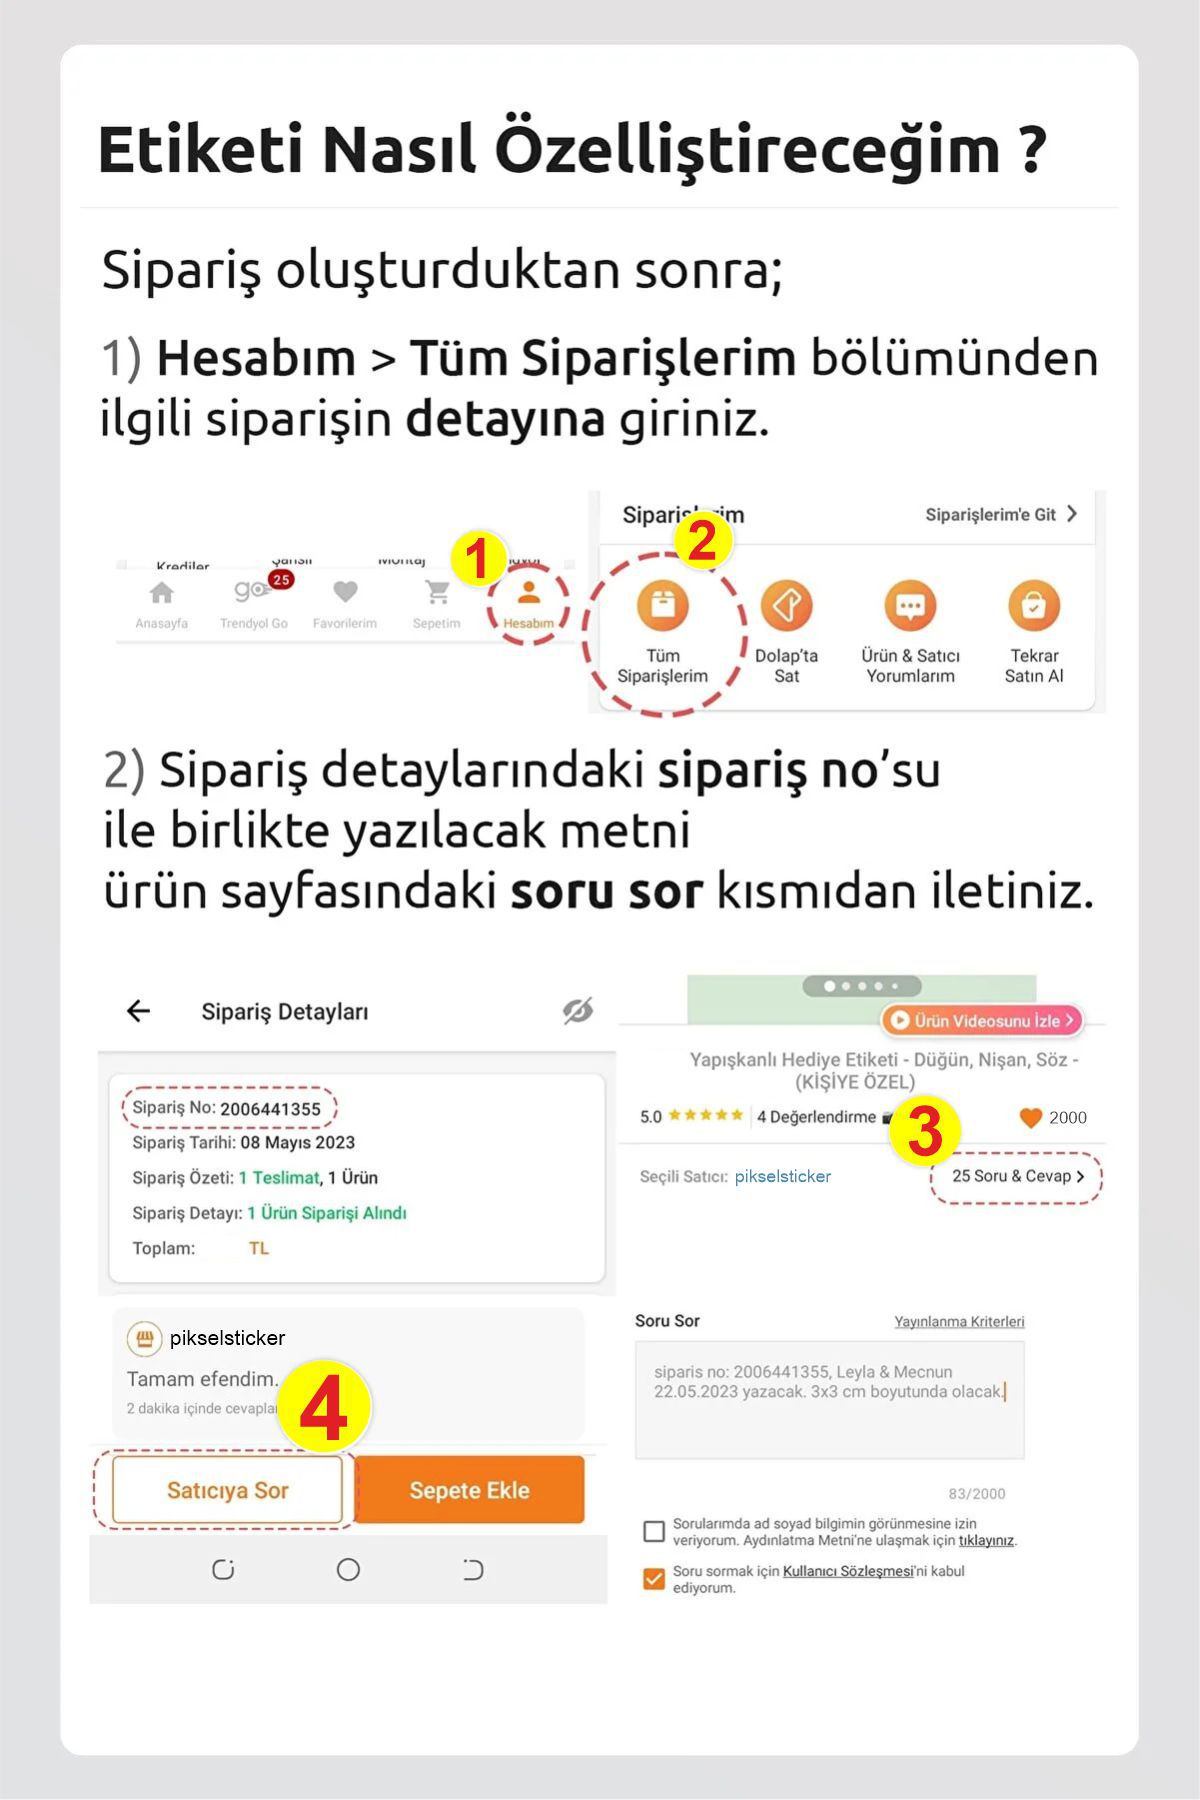 Fenerbahçe Okul Etiketi Kalem Defter Etiketi Özel İsim Yazılabilen Etiket 190 Adet